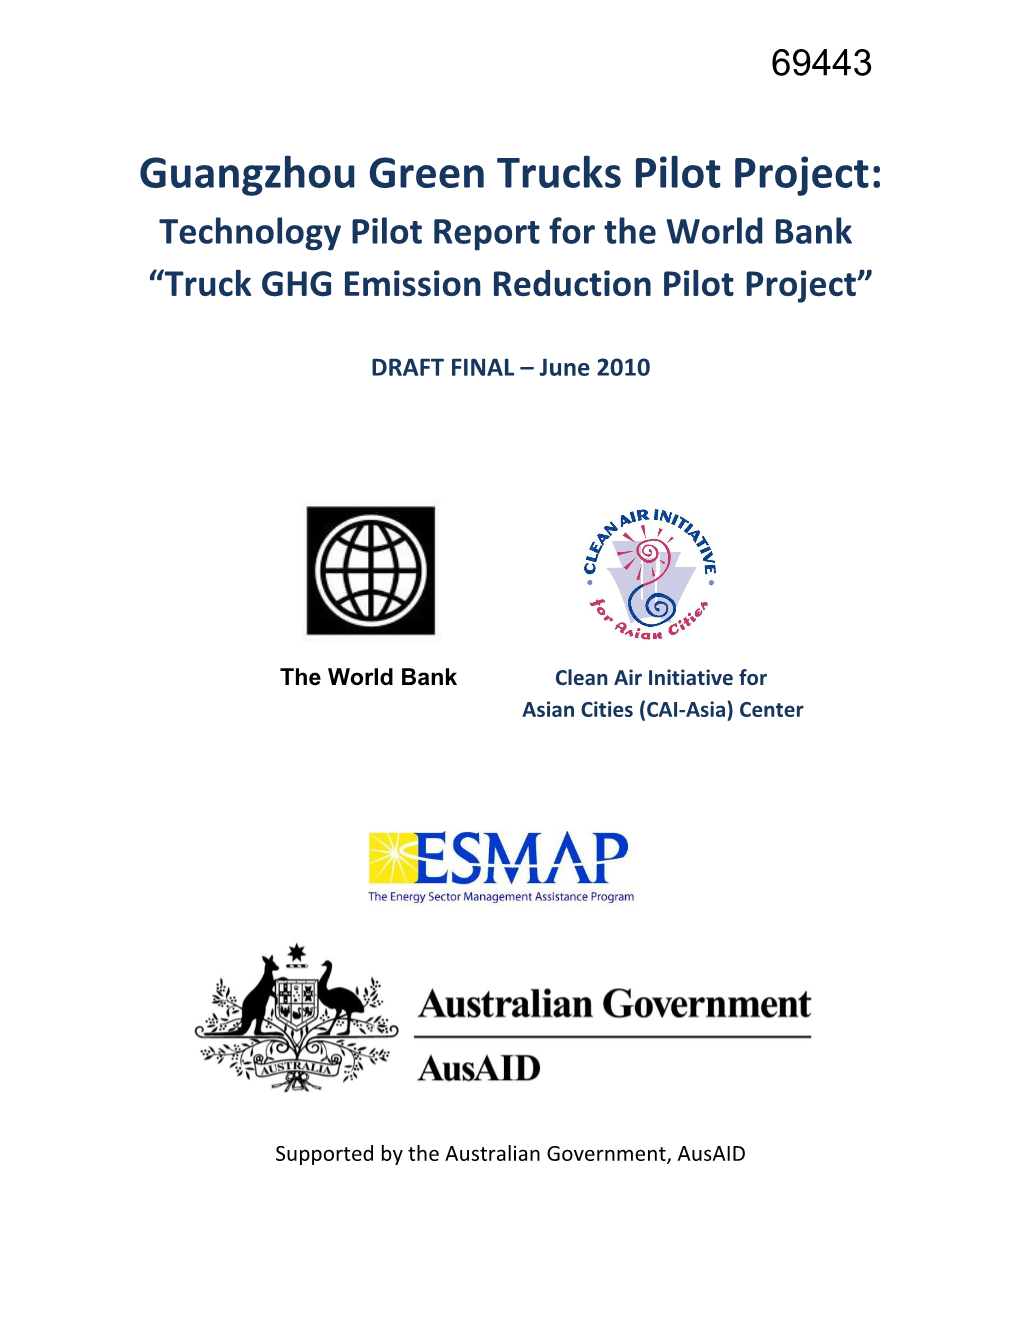 Guangzhou Green Trucks Pilot Project Technology Pilot Report Draft Final